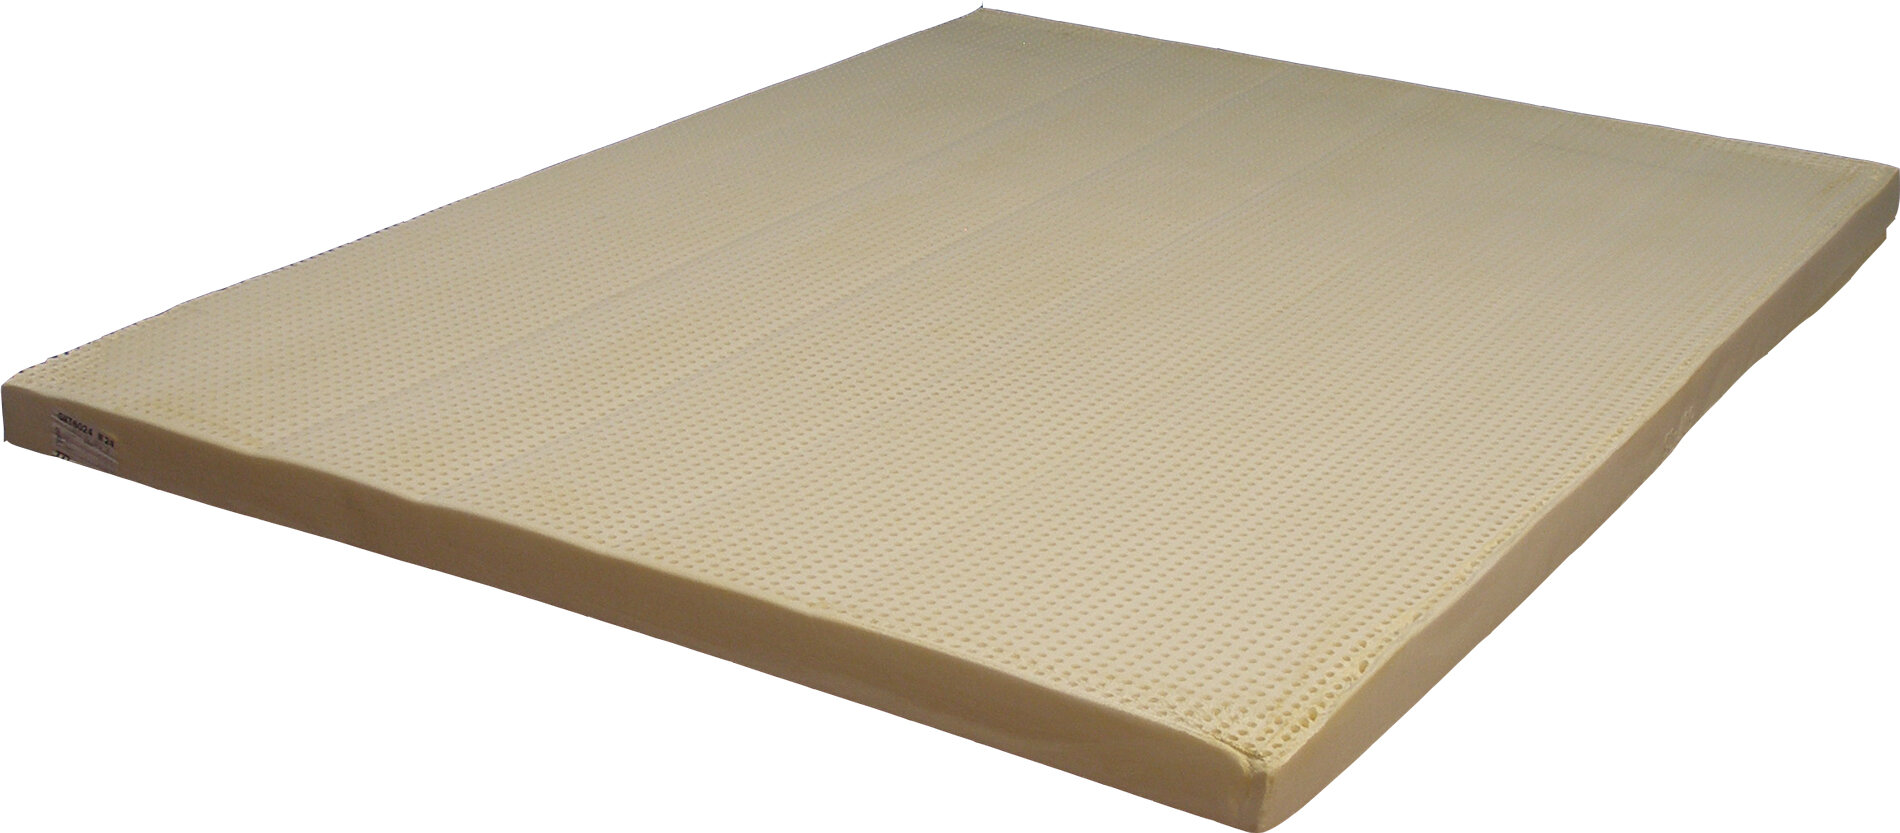 lowes spokane-latex foam mattress